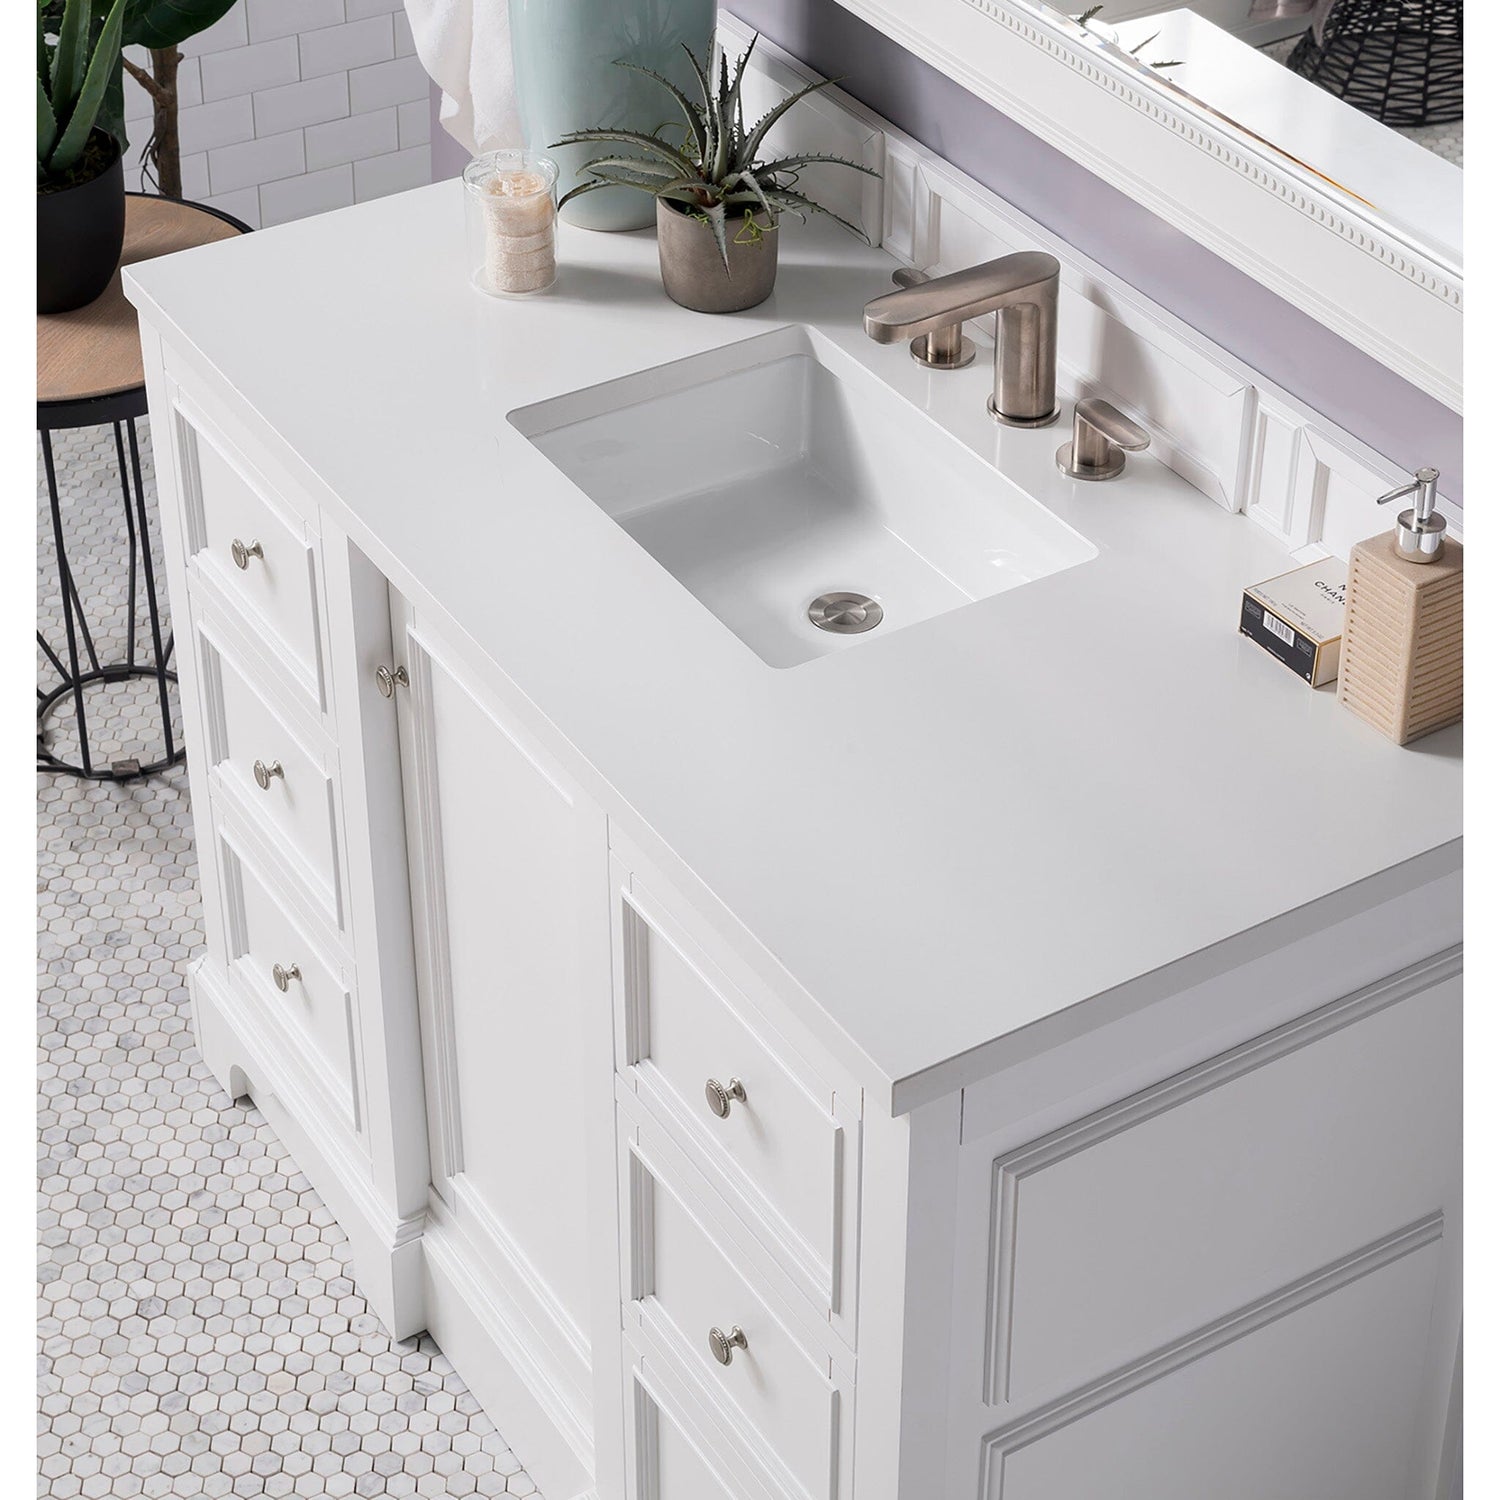 48" De Soto Bright White Single Sink Bathroom Vanity - vanitiesdepot.com